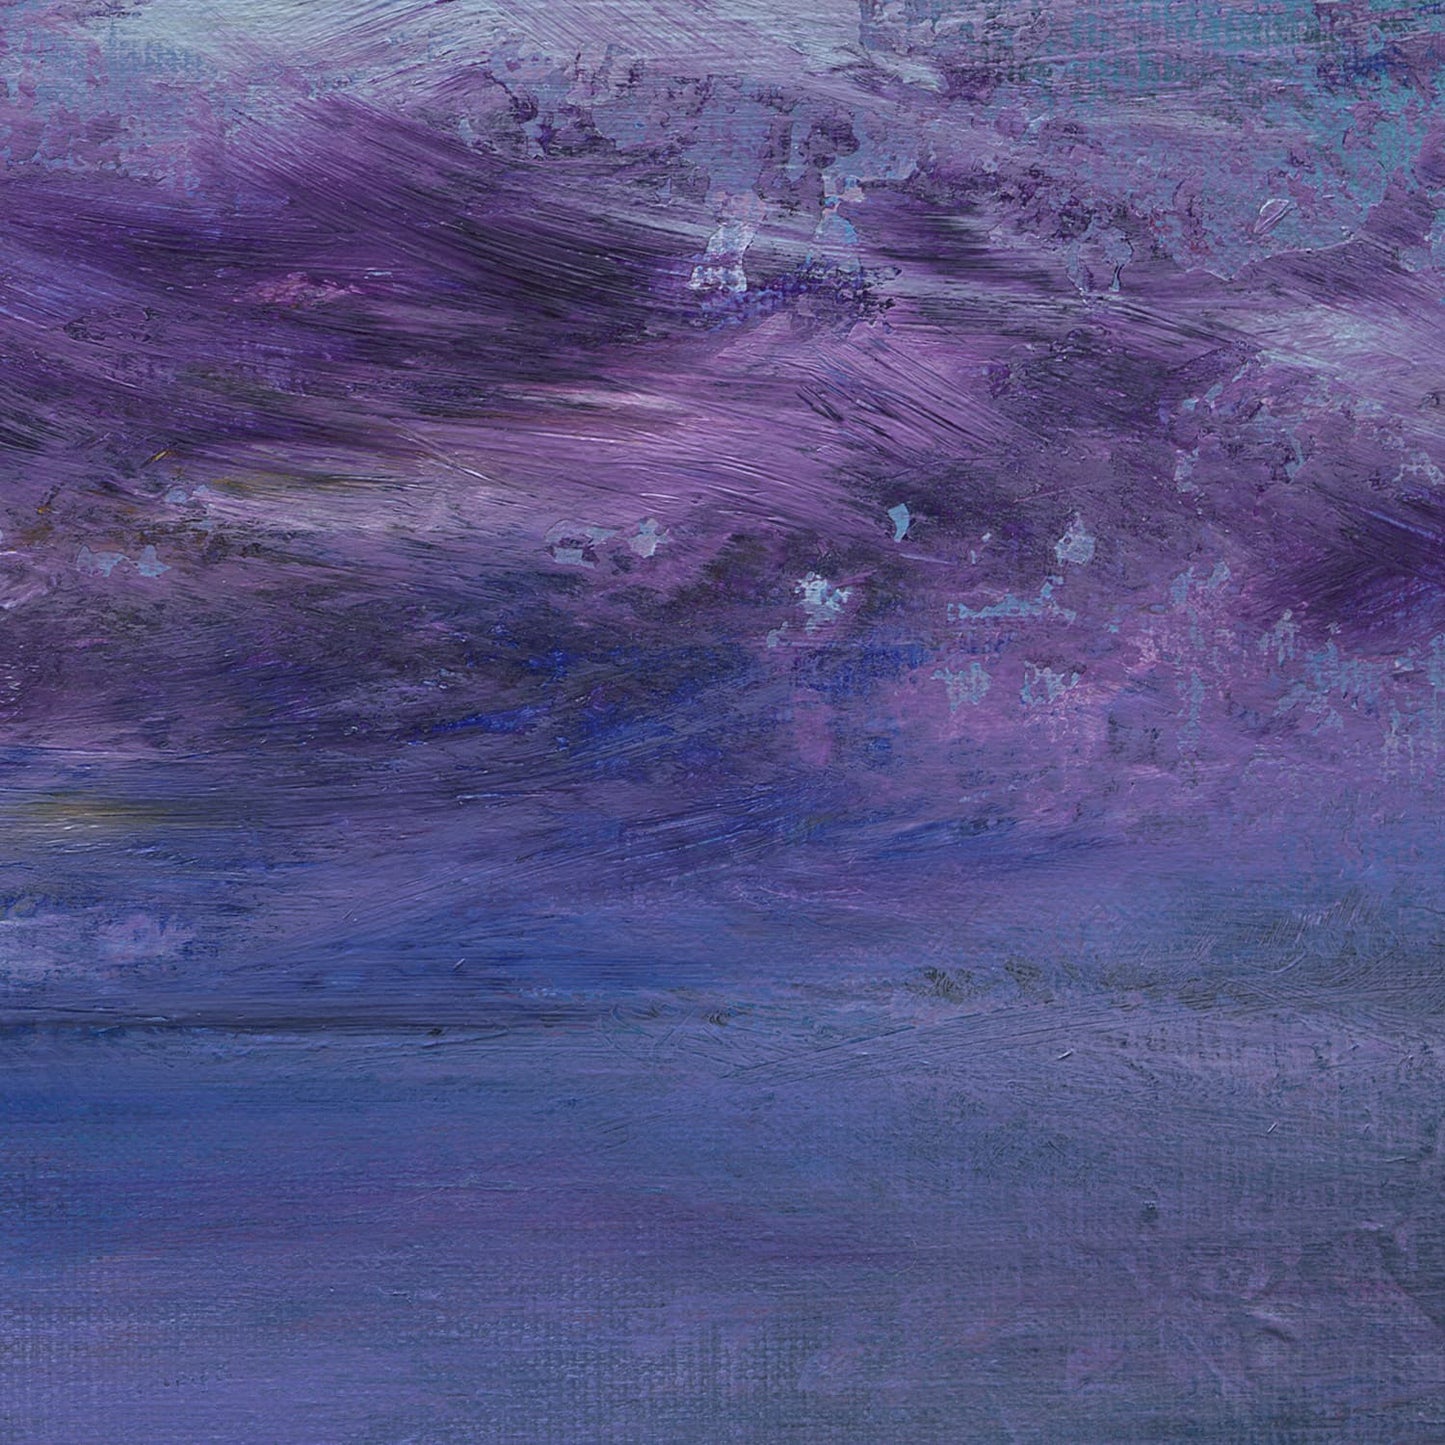 amethyst sky acrylic on canvas original artwork by adam ruspandini